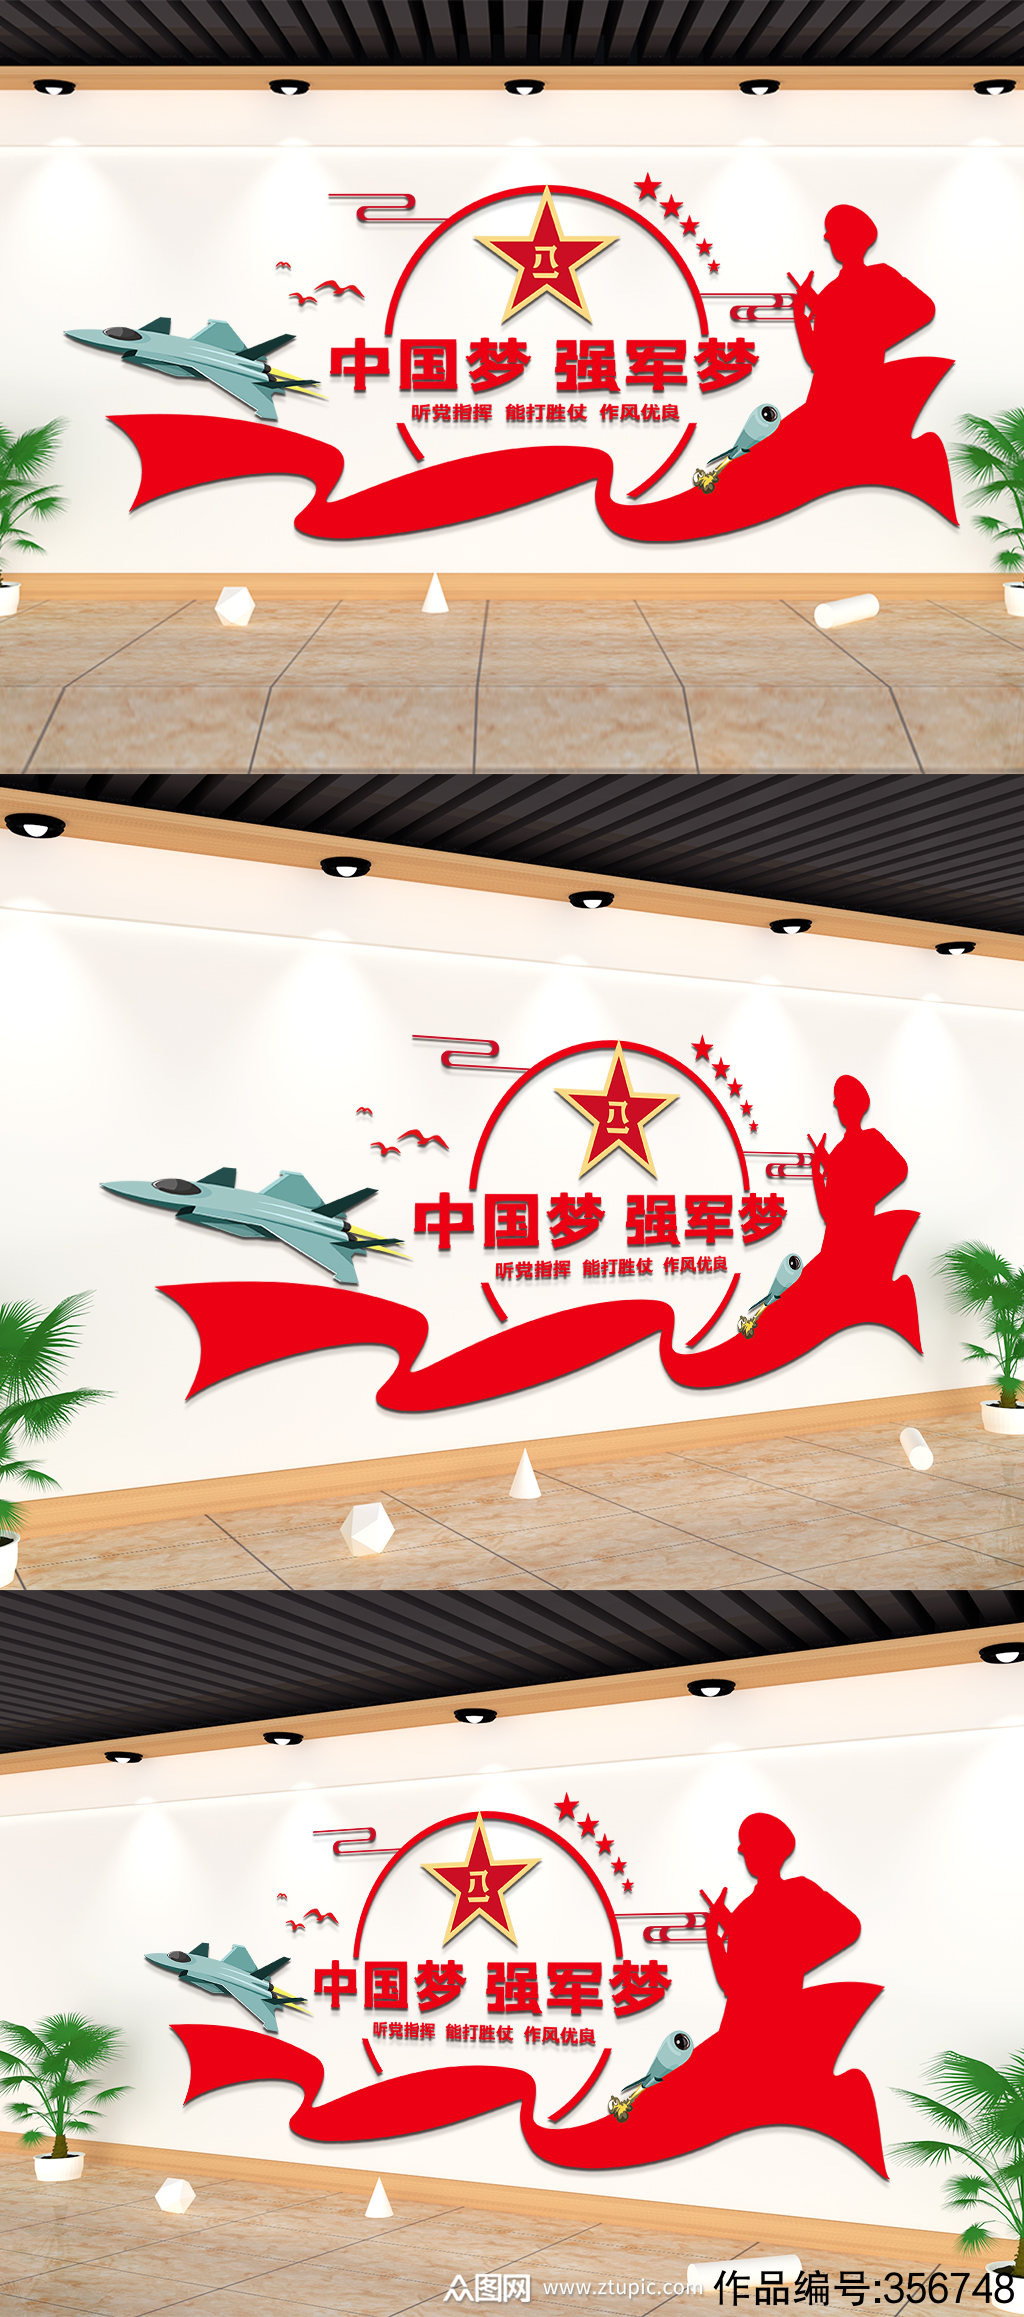 中国梦强军梦军队文化墙模板下载-编号356748-众图网